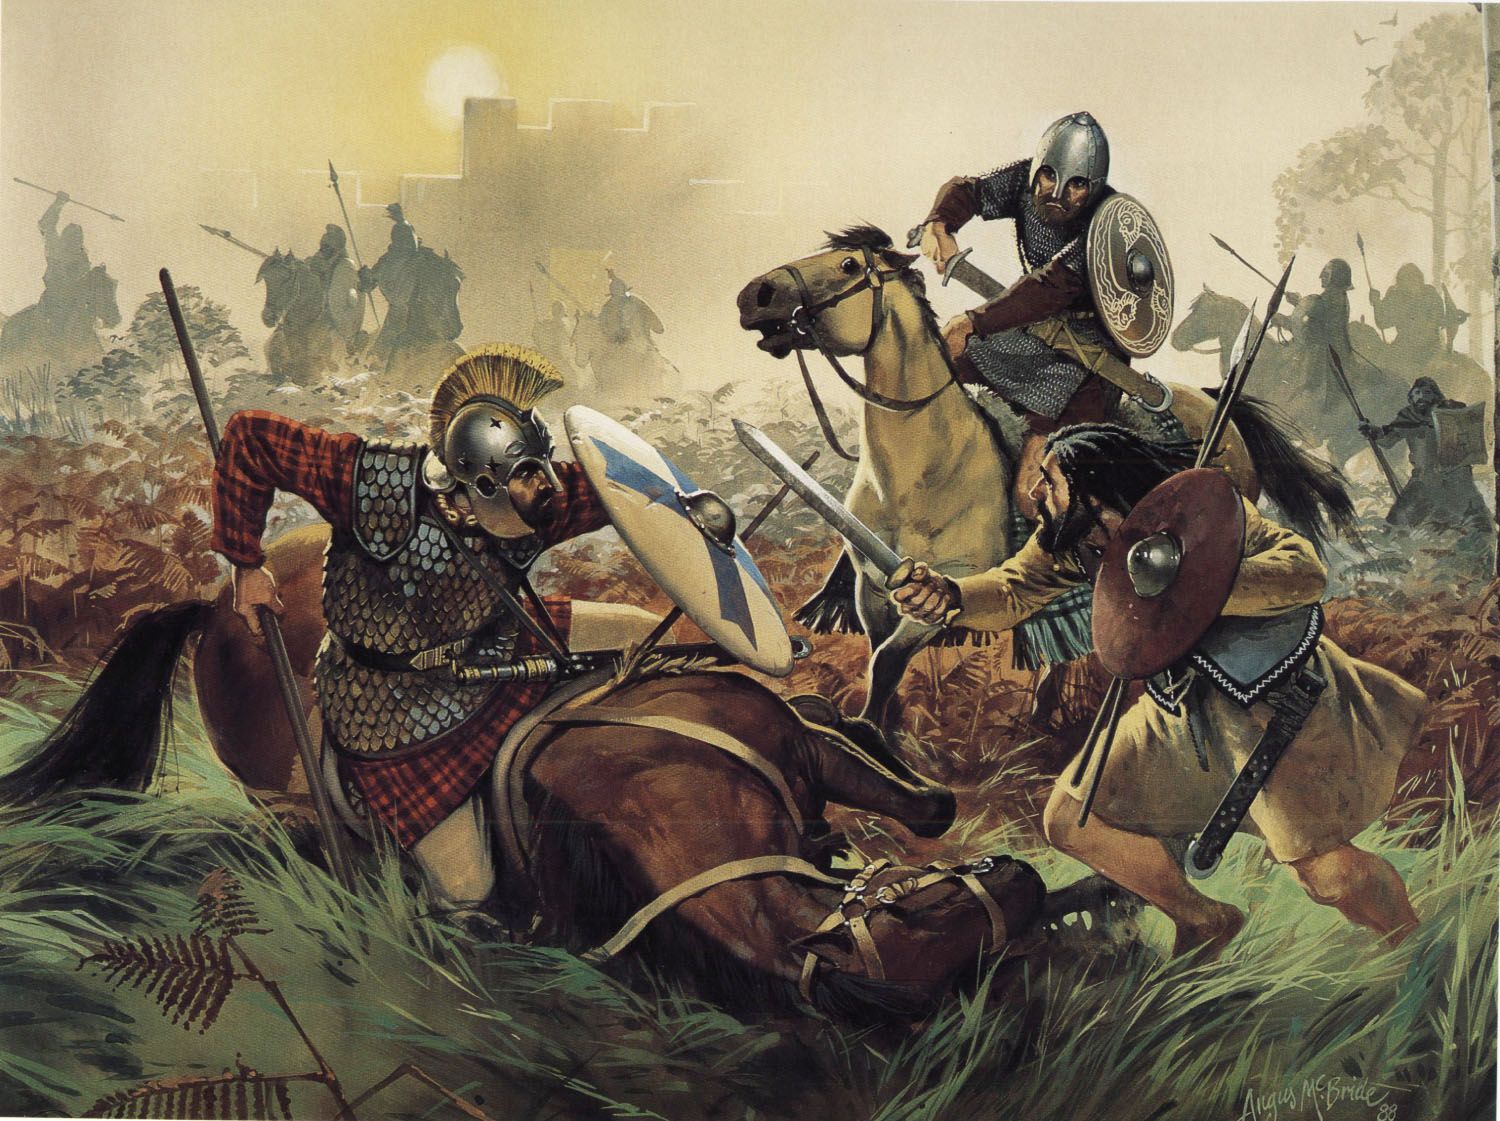 Roman Army Life in Britain II